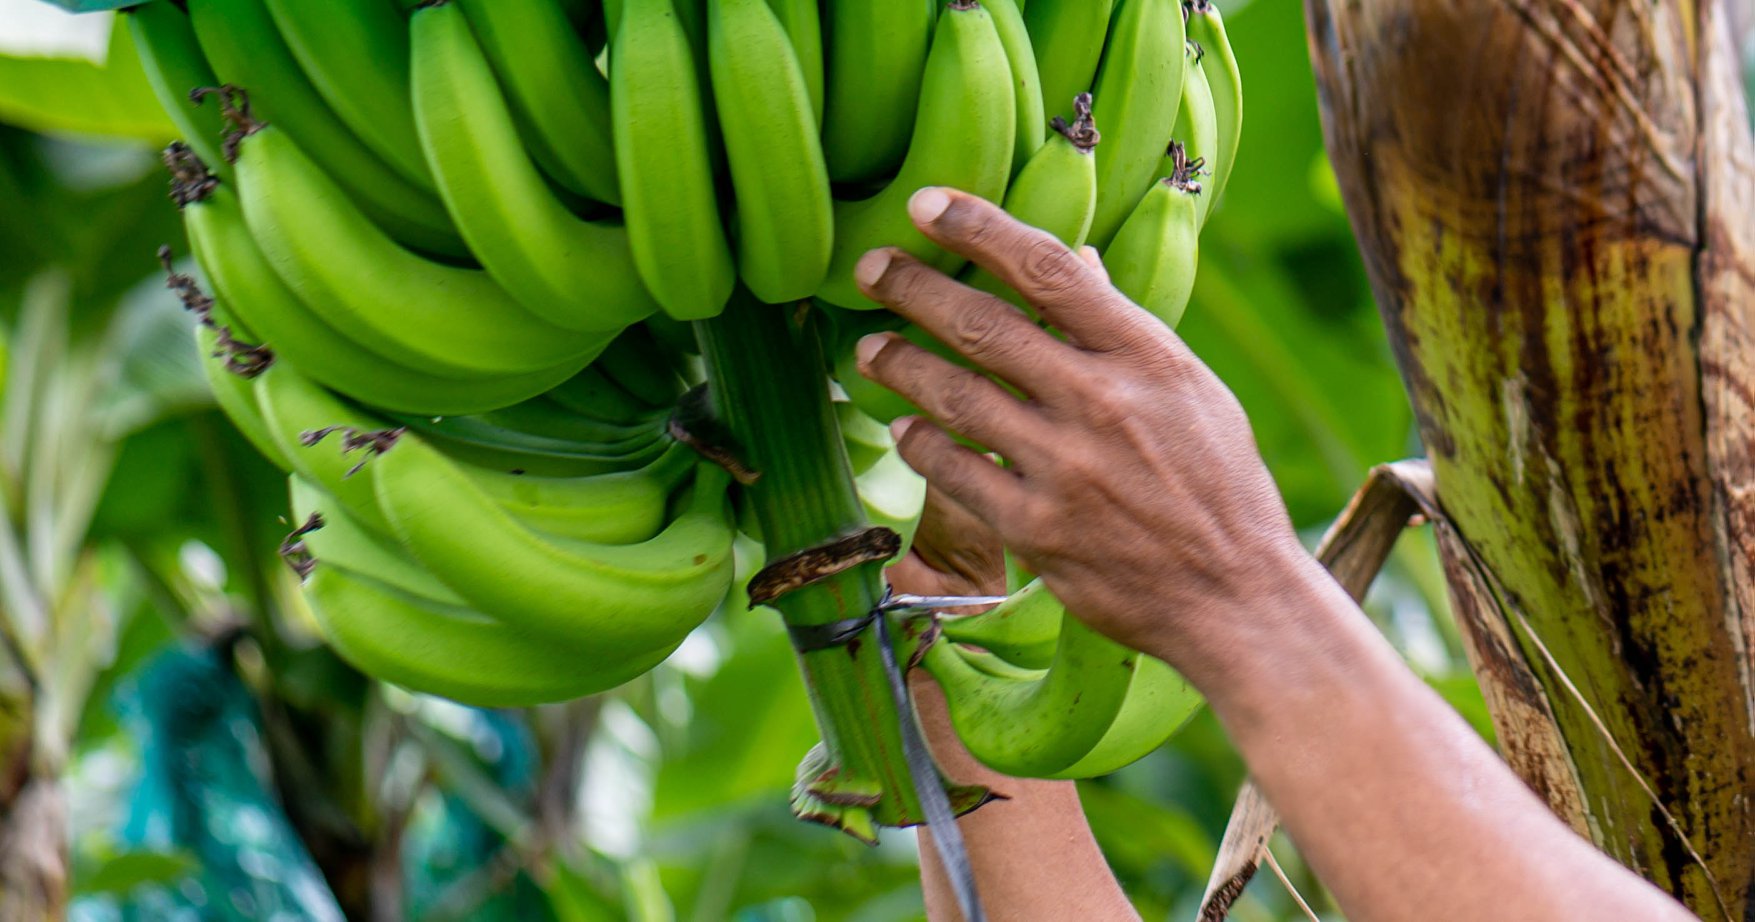     Soutien exceptionnel aux Producteurs de Bananes en Martinique

